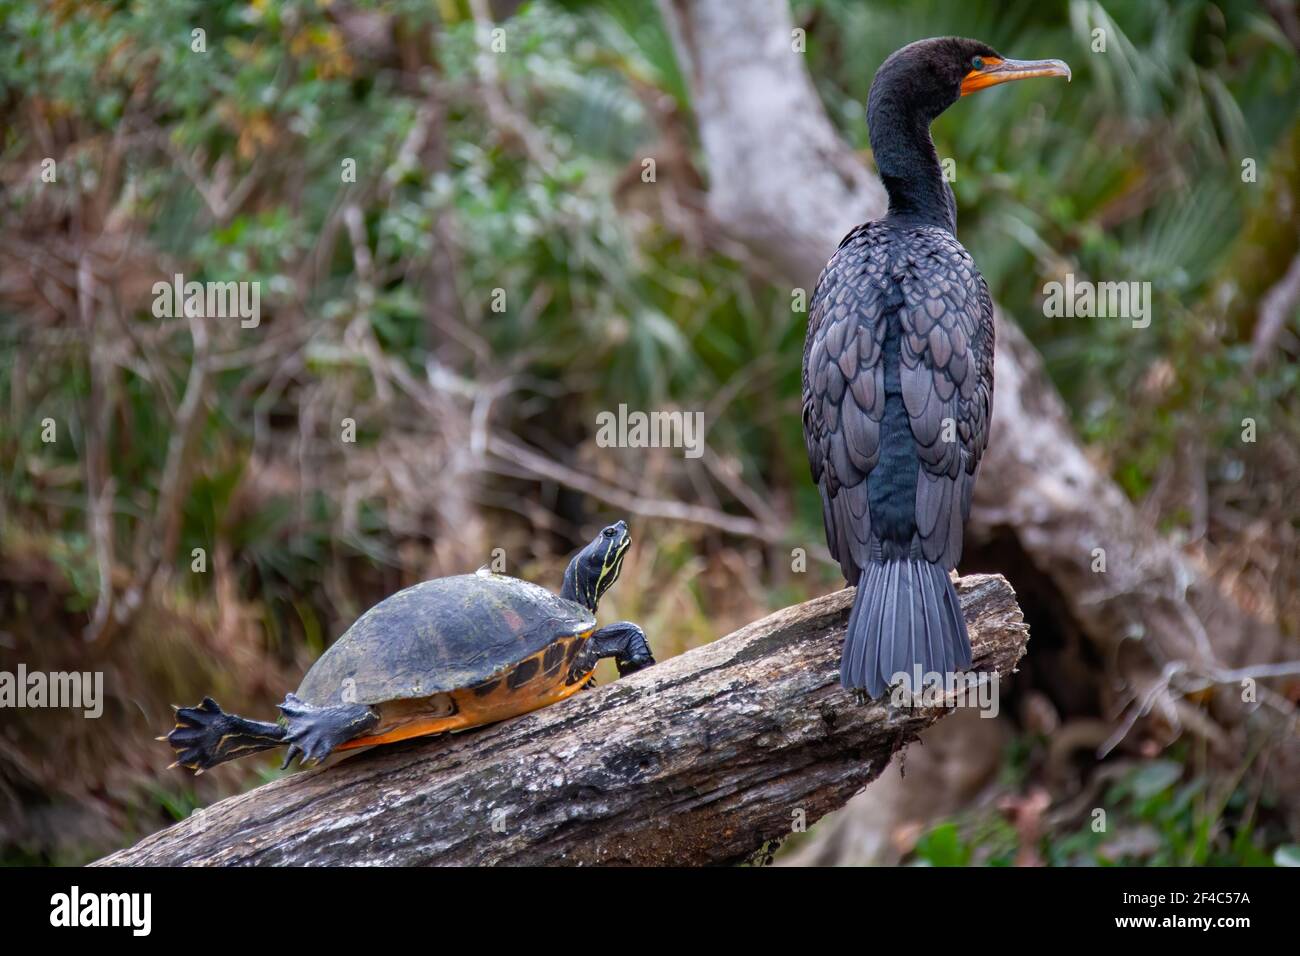 Un cormorán de doble cresta y una tortuga encaramada en un tronco. Foto de stock